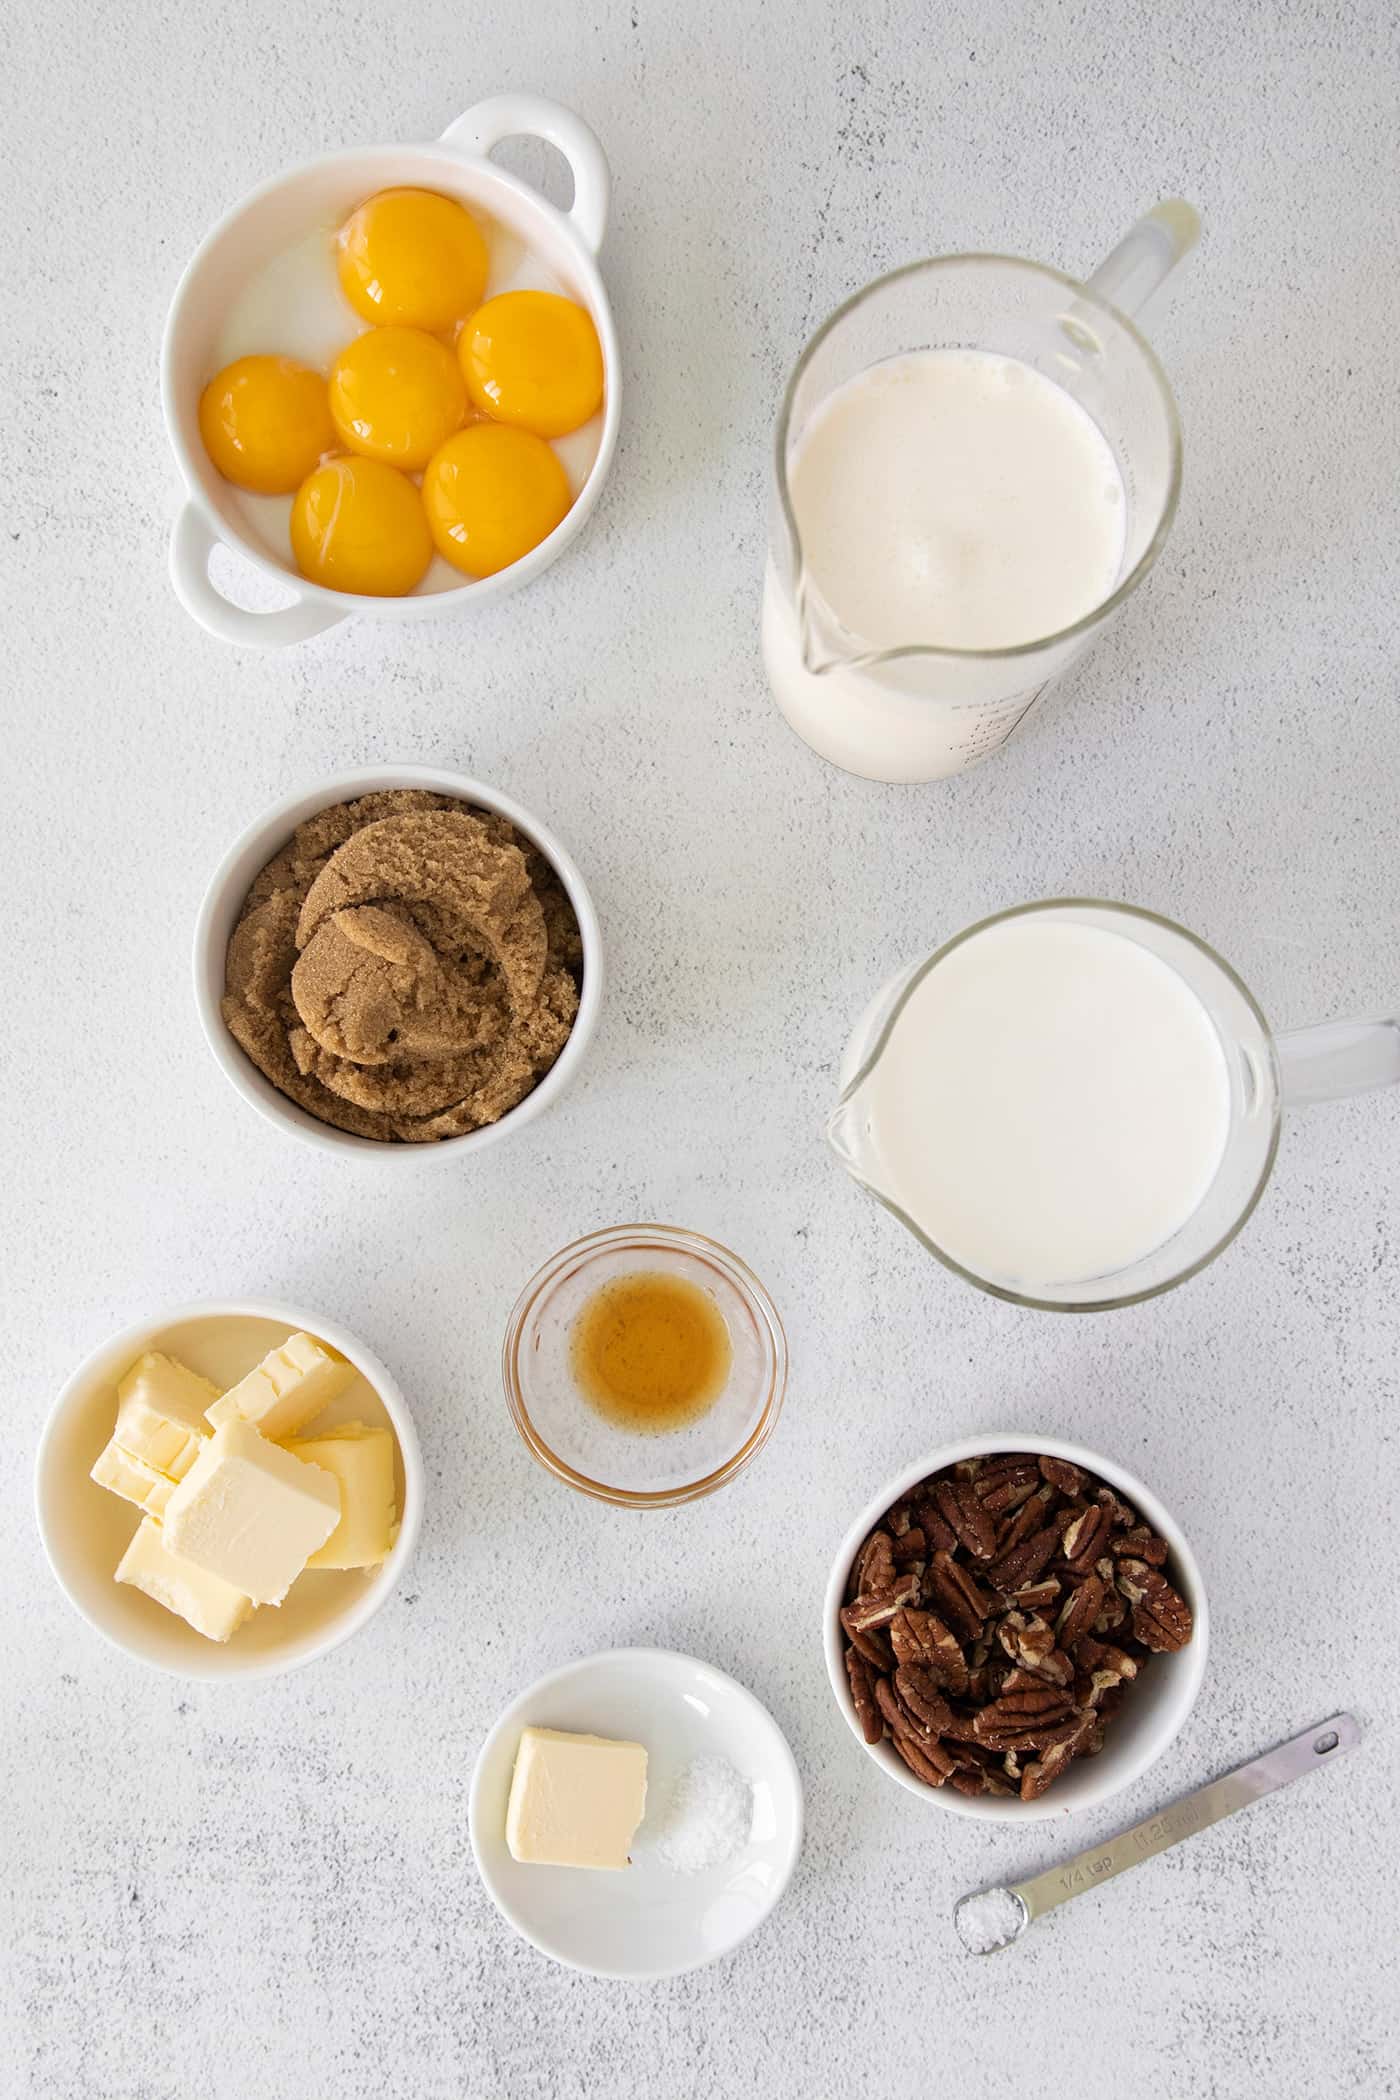 Overhead view of butter pecan ice cream ingredients